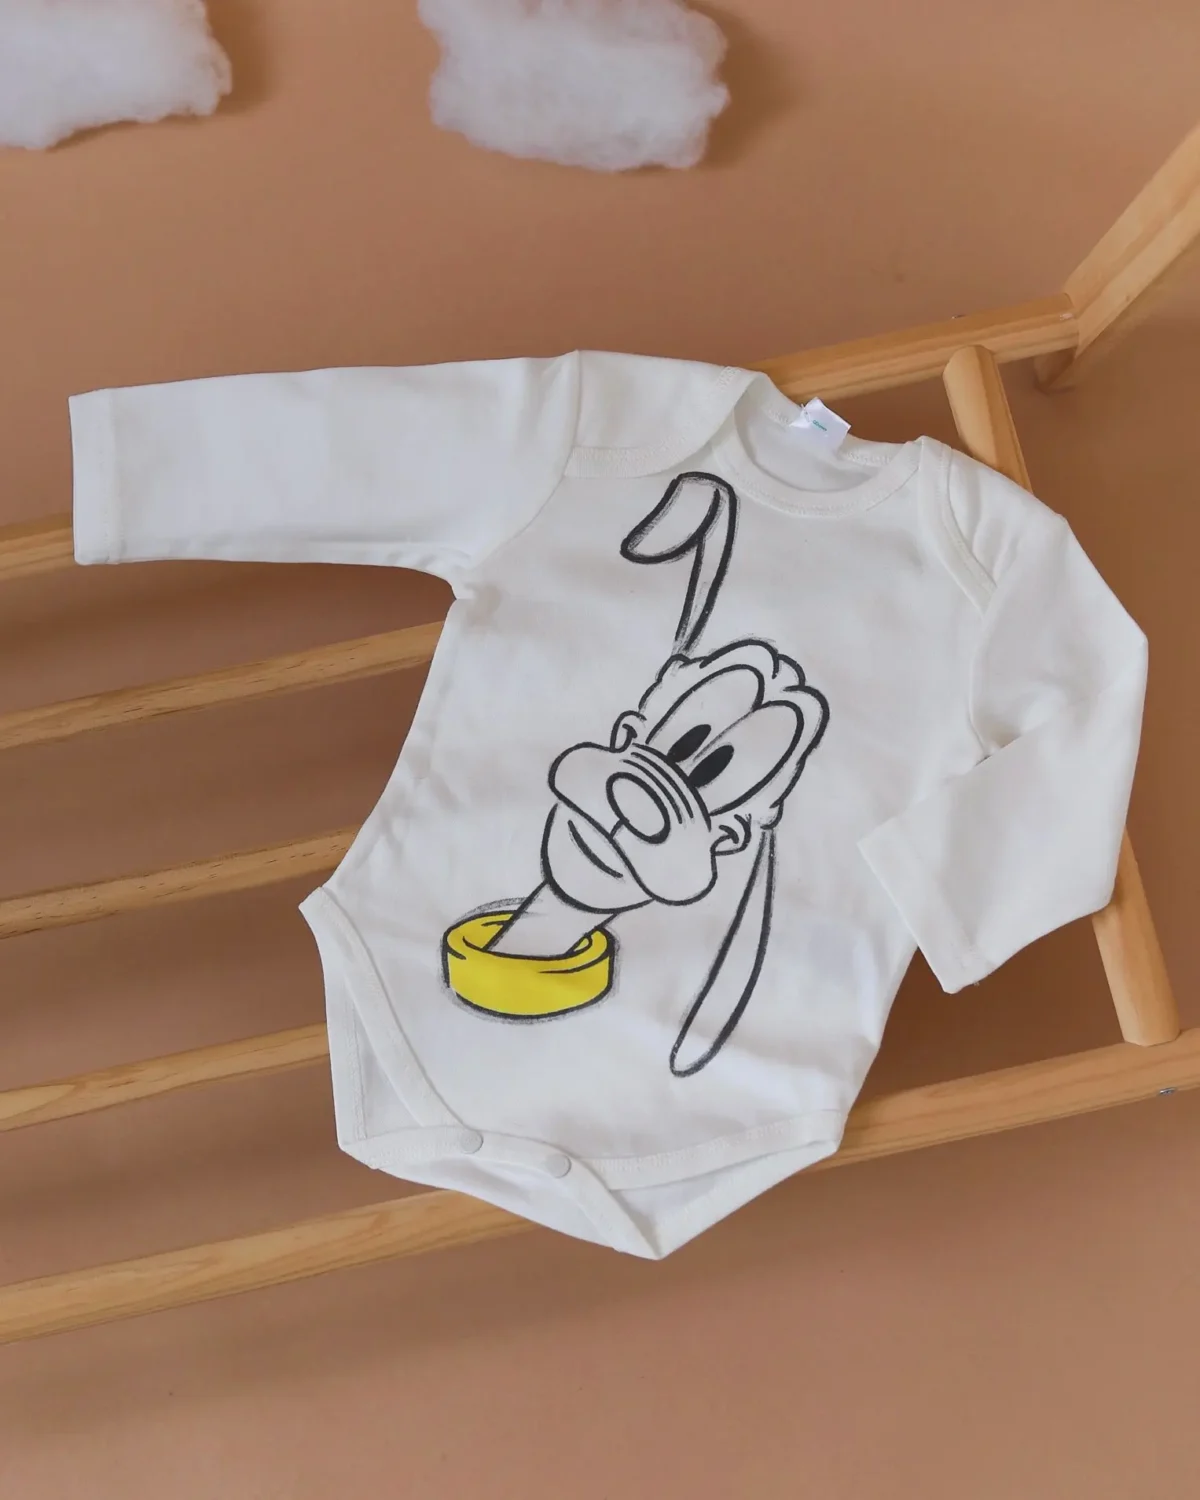 Trodelni kompletić Disney Baby Pluton